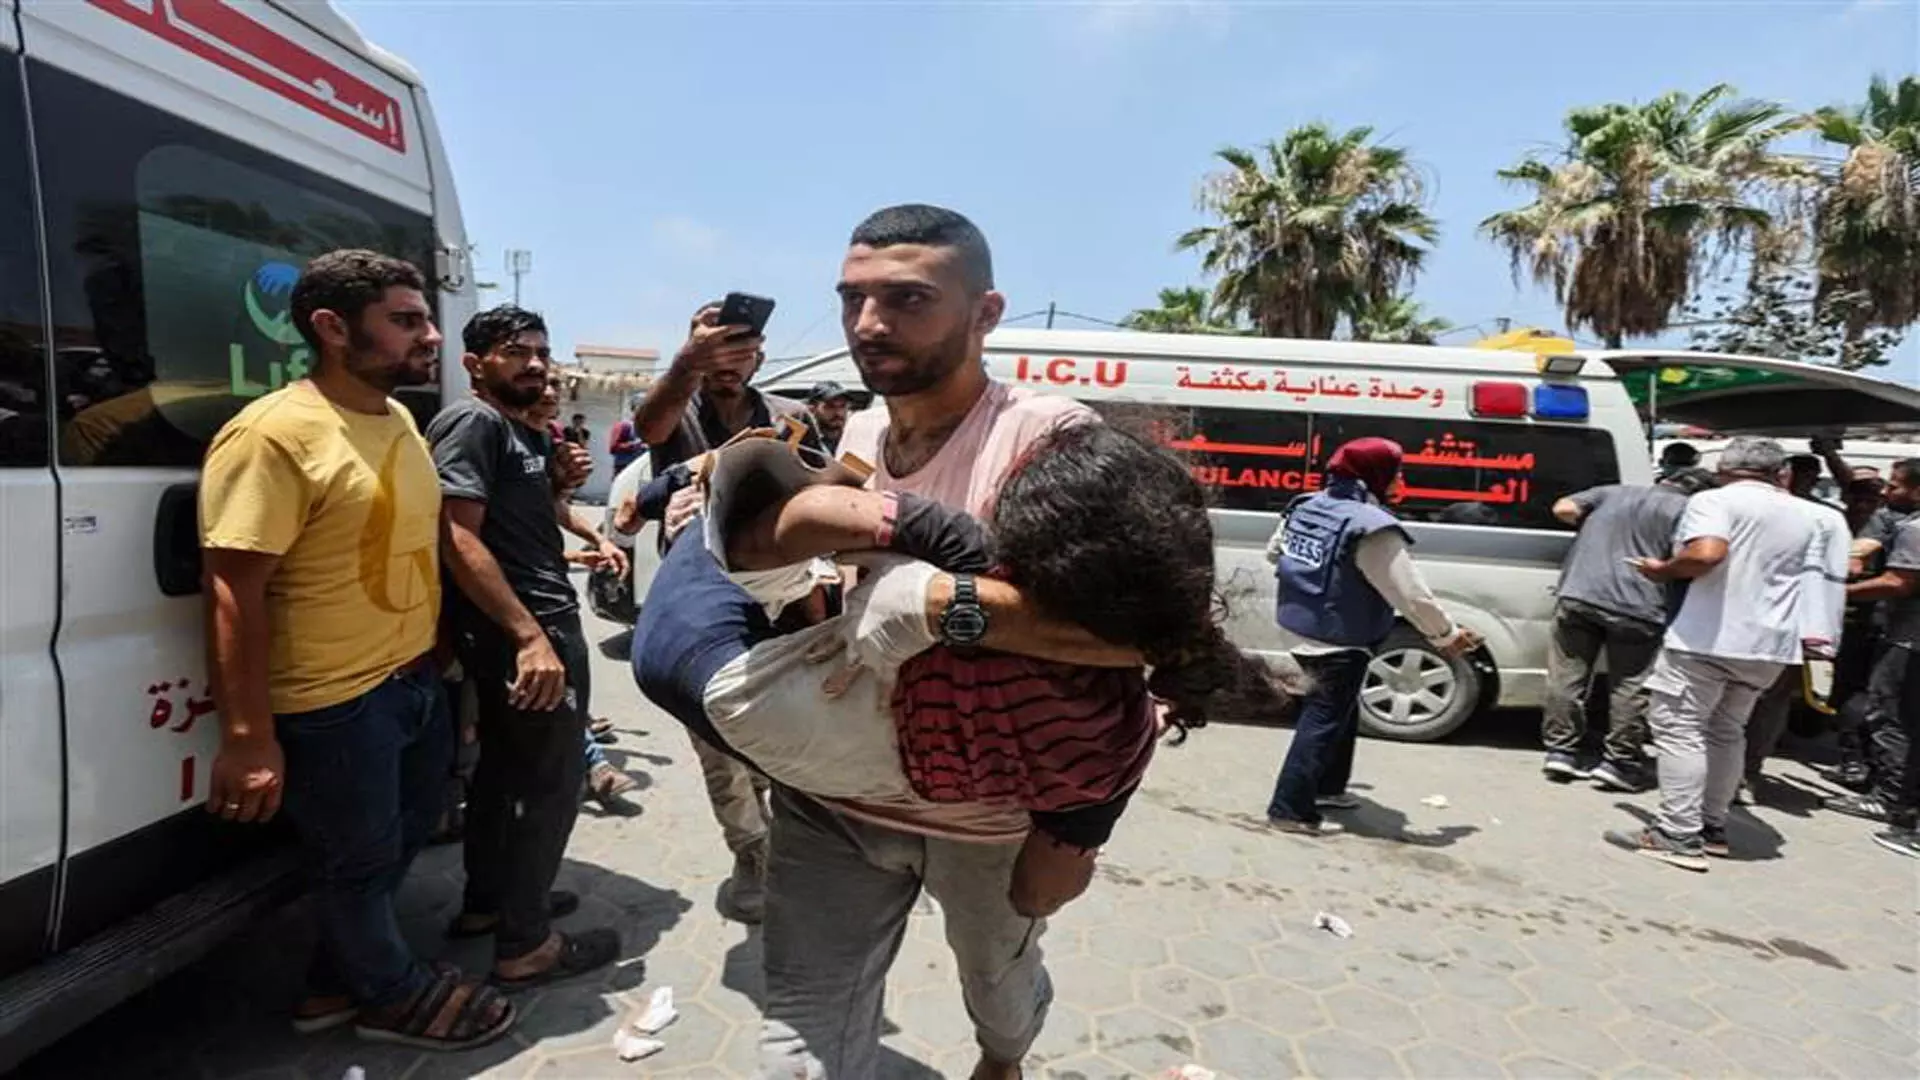 ISRAEL: गाजा क्षेत्र में भारी लड़ाई, 94 फिलिस्तीनी मारे गए